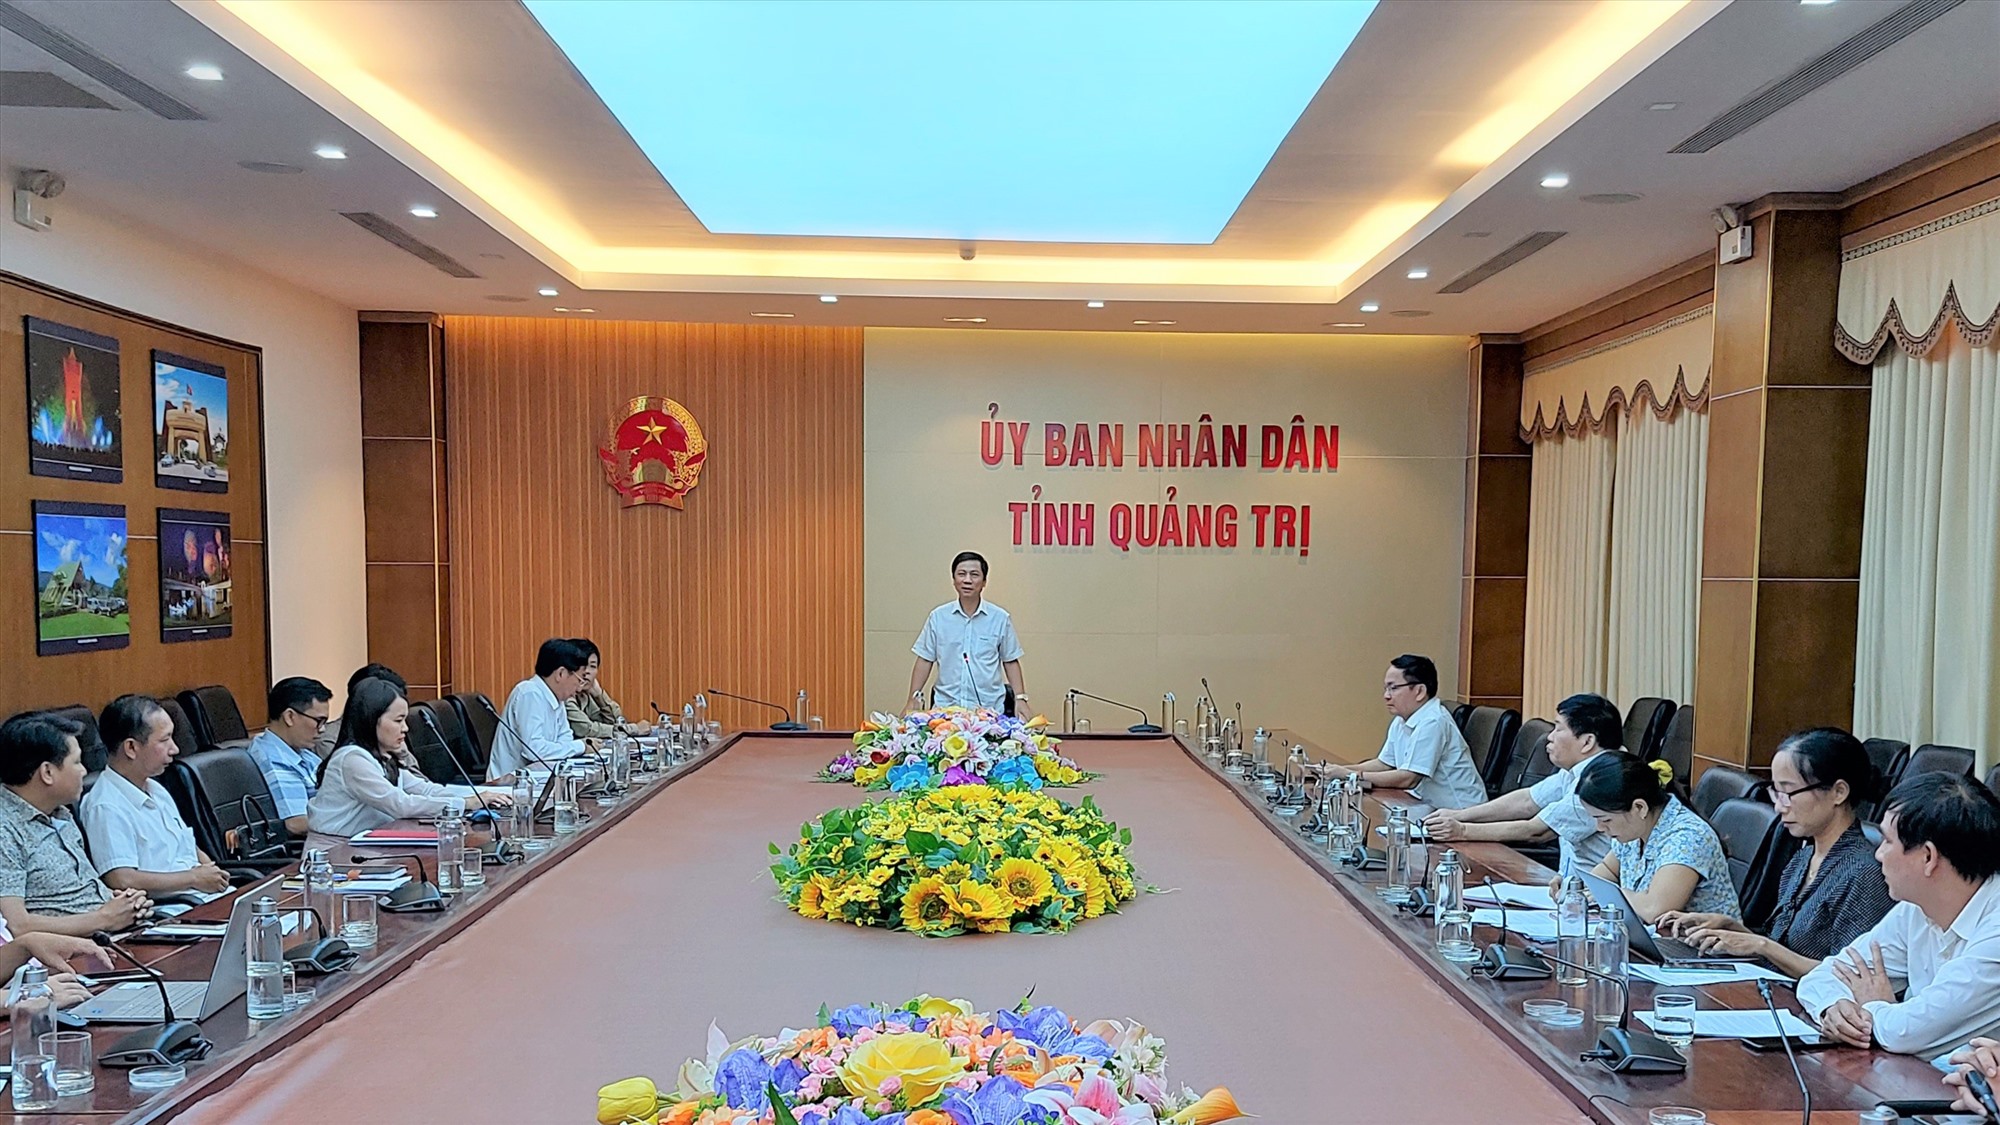 Phó Chủ tịch UBND tỉnh Hoàng Nam đề nghị chuẩn bị tâm thế để mỗi người dân là đại sứ du lịch vì hòa bình ngay từ bây giờ - Ảnh: N.T.H